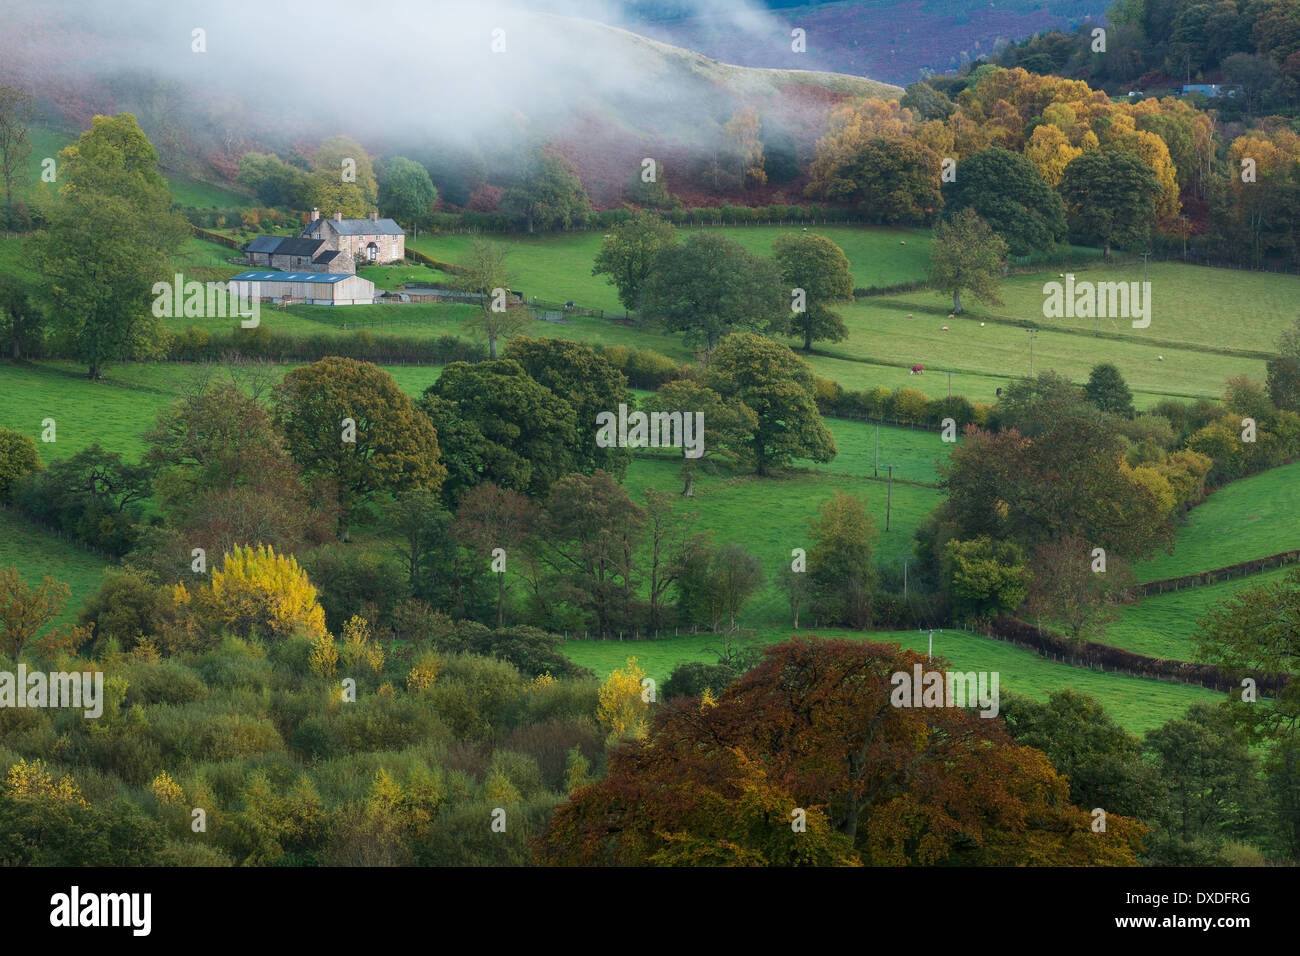 autumn colours and mist in the Dee Valley (Dyffryn Dyfrdwy) near Llangollen, Denbighshire, Wales Stock Photo